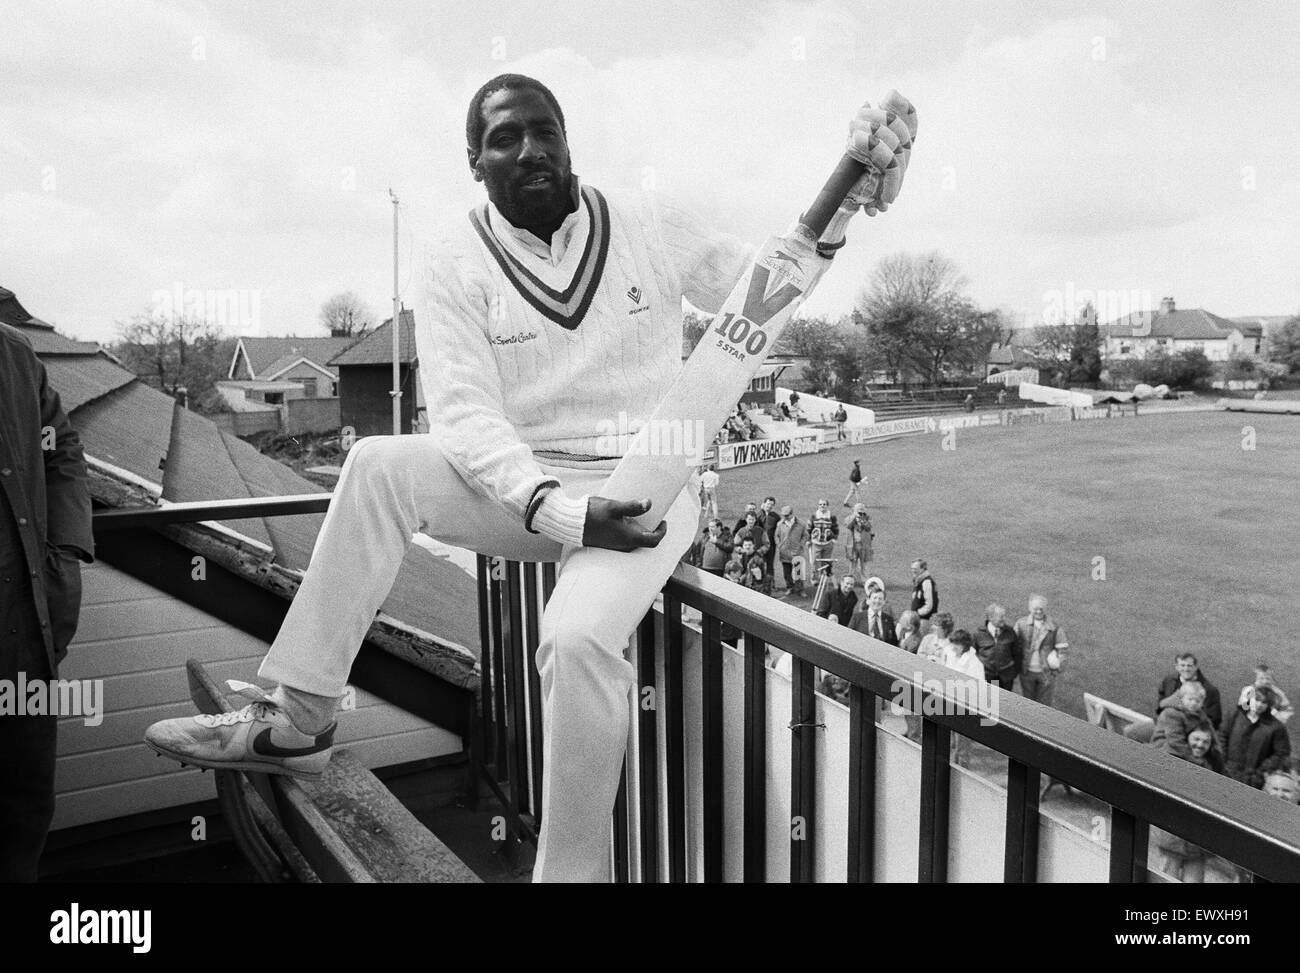 West Indies cricketer Richards en Riston County Cricket Club donde pasó la temporada 1987 de la Liga de Lancashire jugando como profesional del club tras su despido de Somerset. Fue en preparación para la visita de las Indias Occidentales en la temporada siguiente. Foto de stock